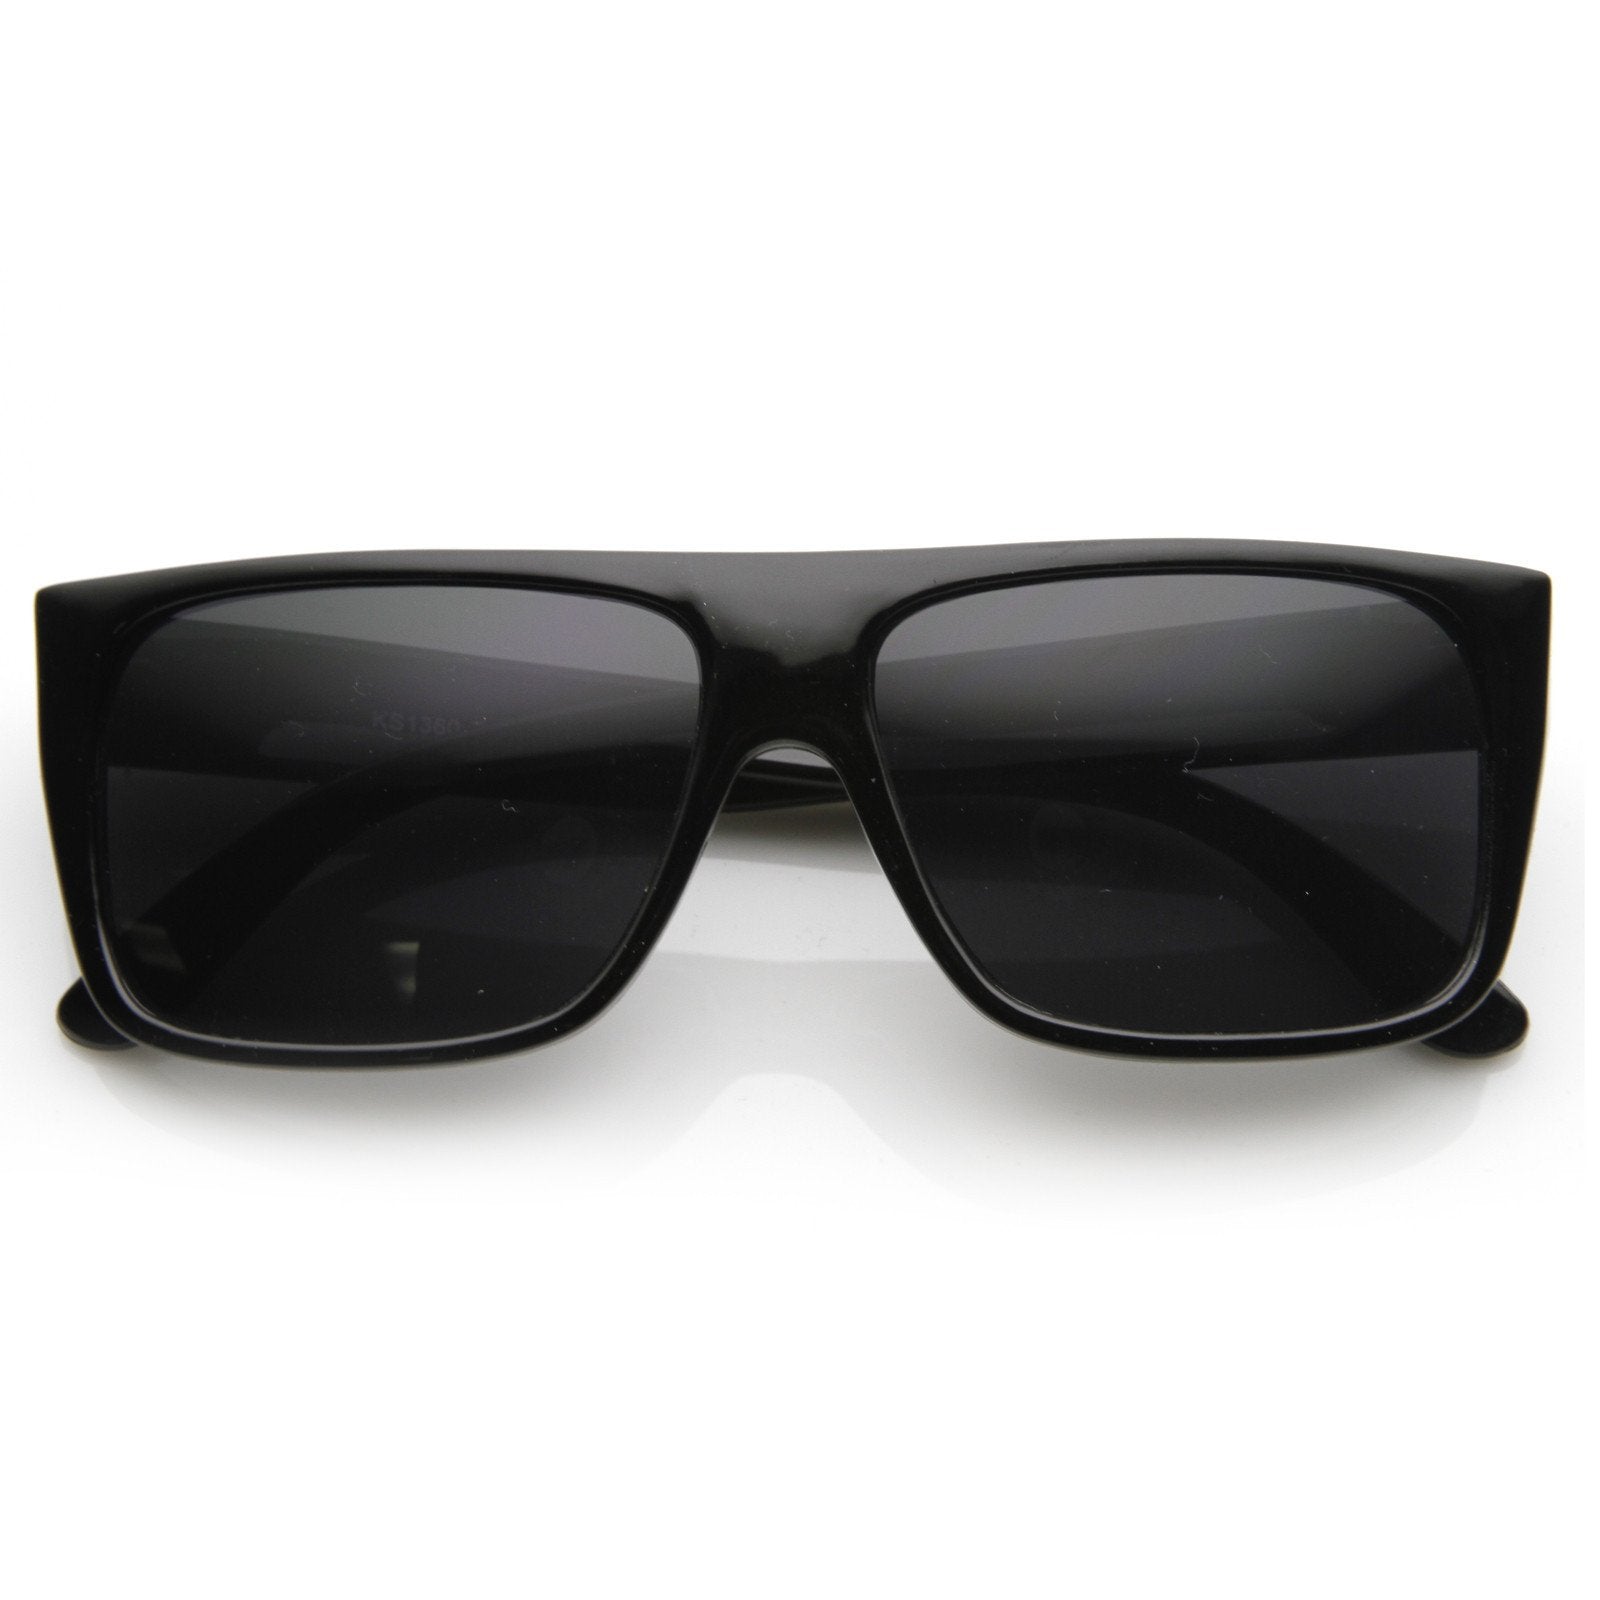 Black Grey Retro Hip-hop Sunglasses Small Frame Round Street